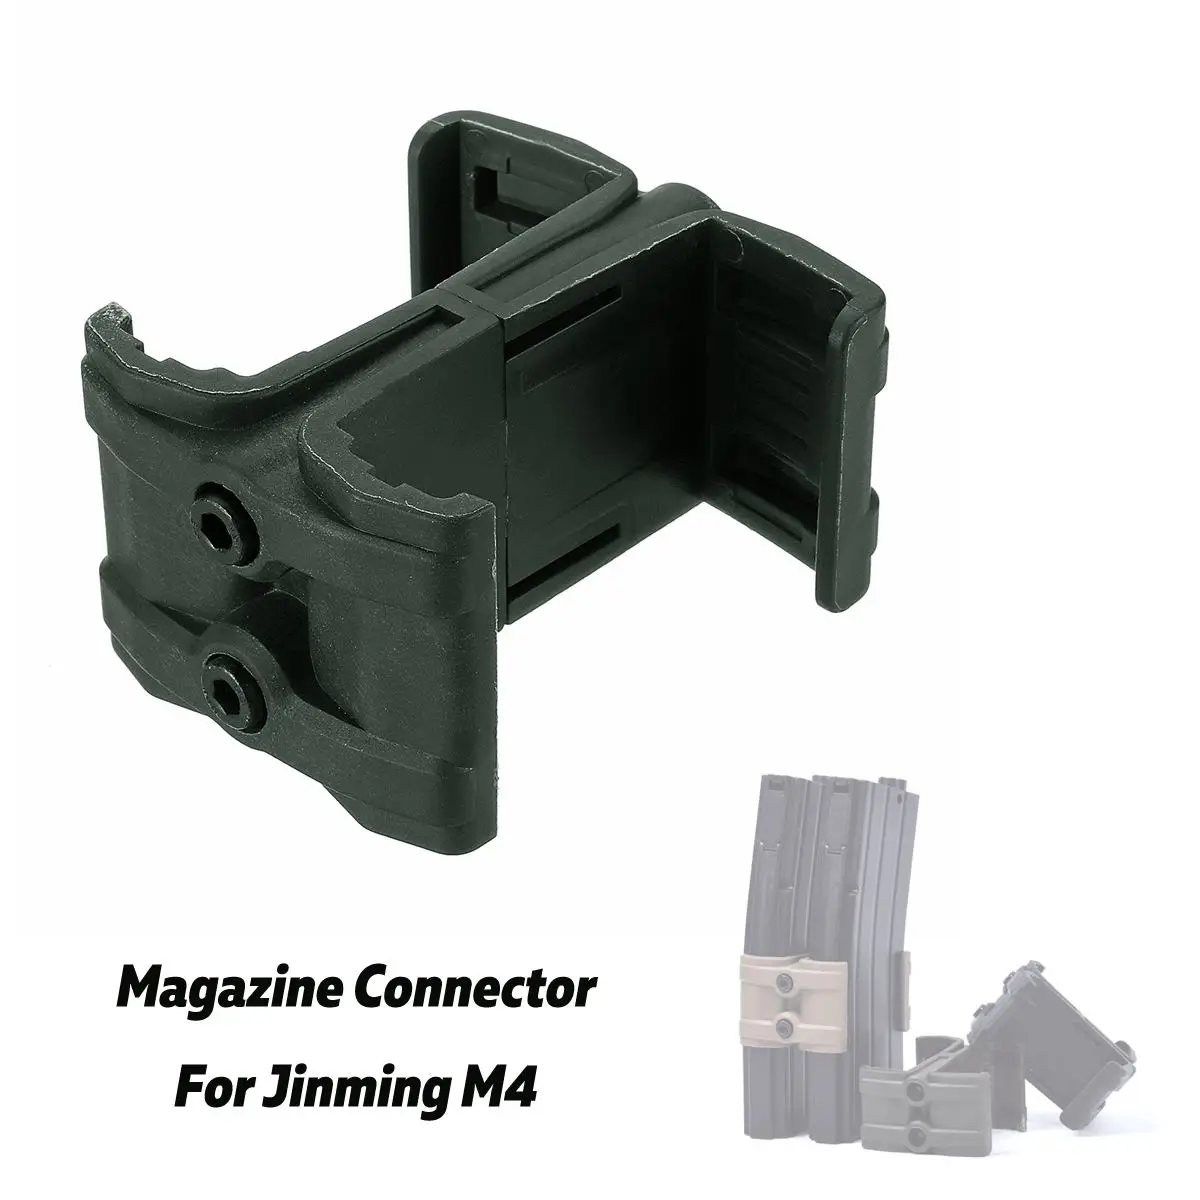 Тактический Журнал "ружья" Параллельный разъем с ключ, дюймовый стандарт стяжка для магазинов Разъем Link комплект для Jinming M4